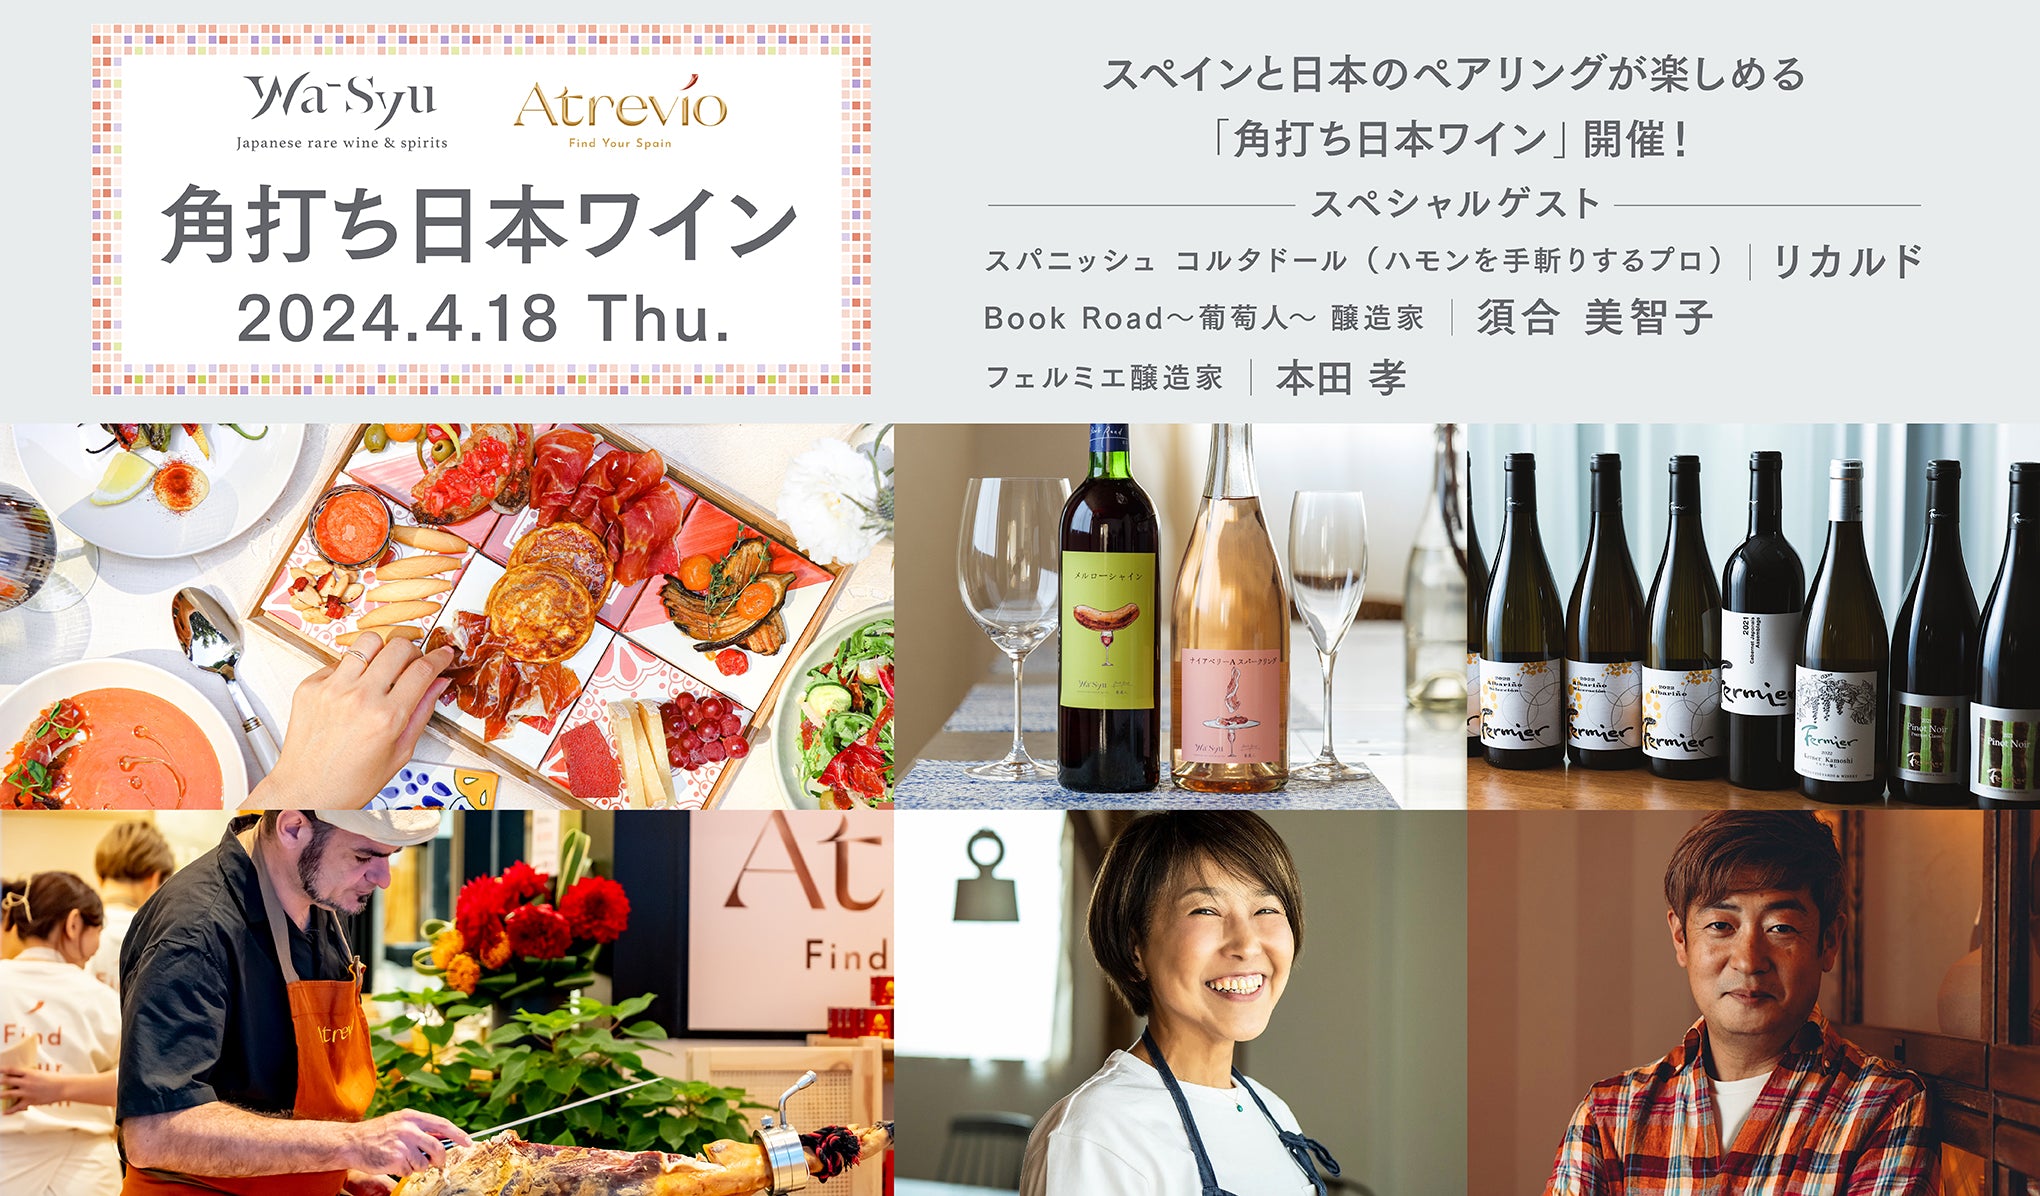 スペインと日本のペアリング体験が楽しめる Atrevío × wa-syu「角打ち日本ワイン」を開催